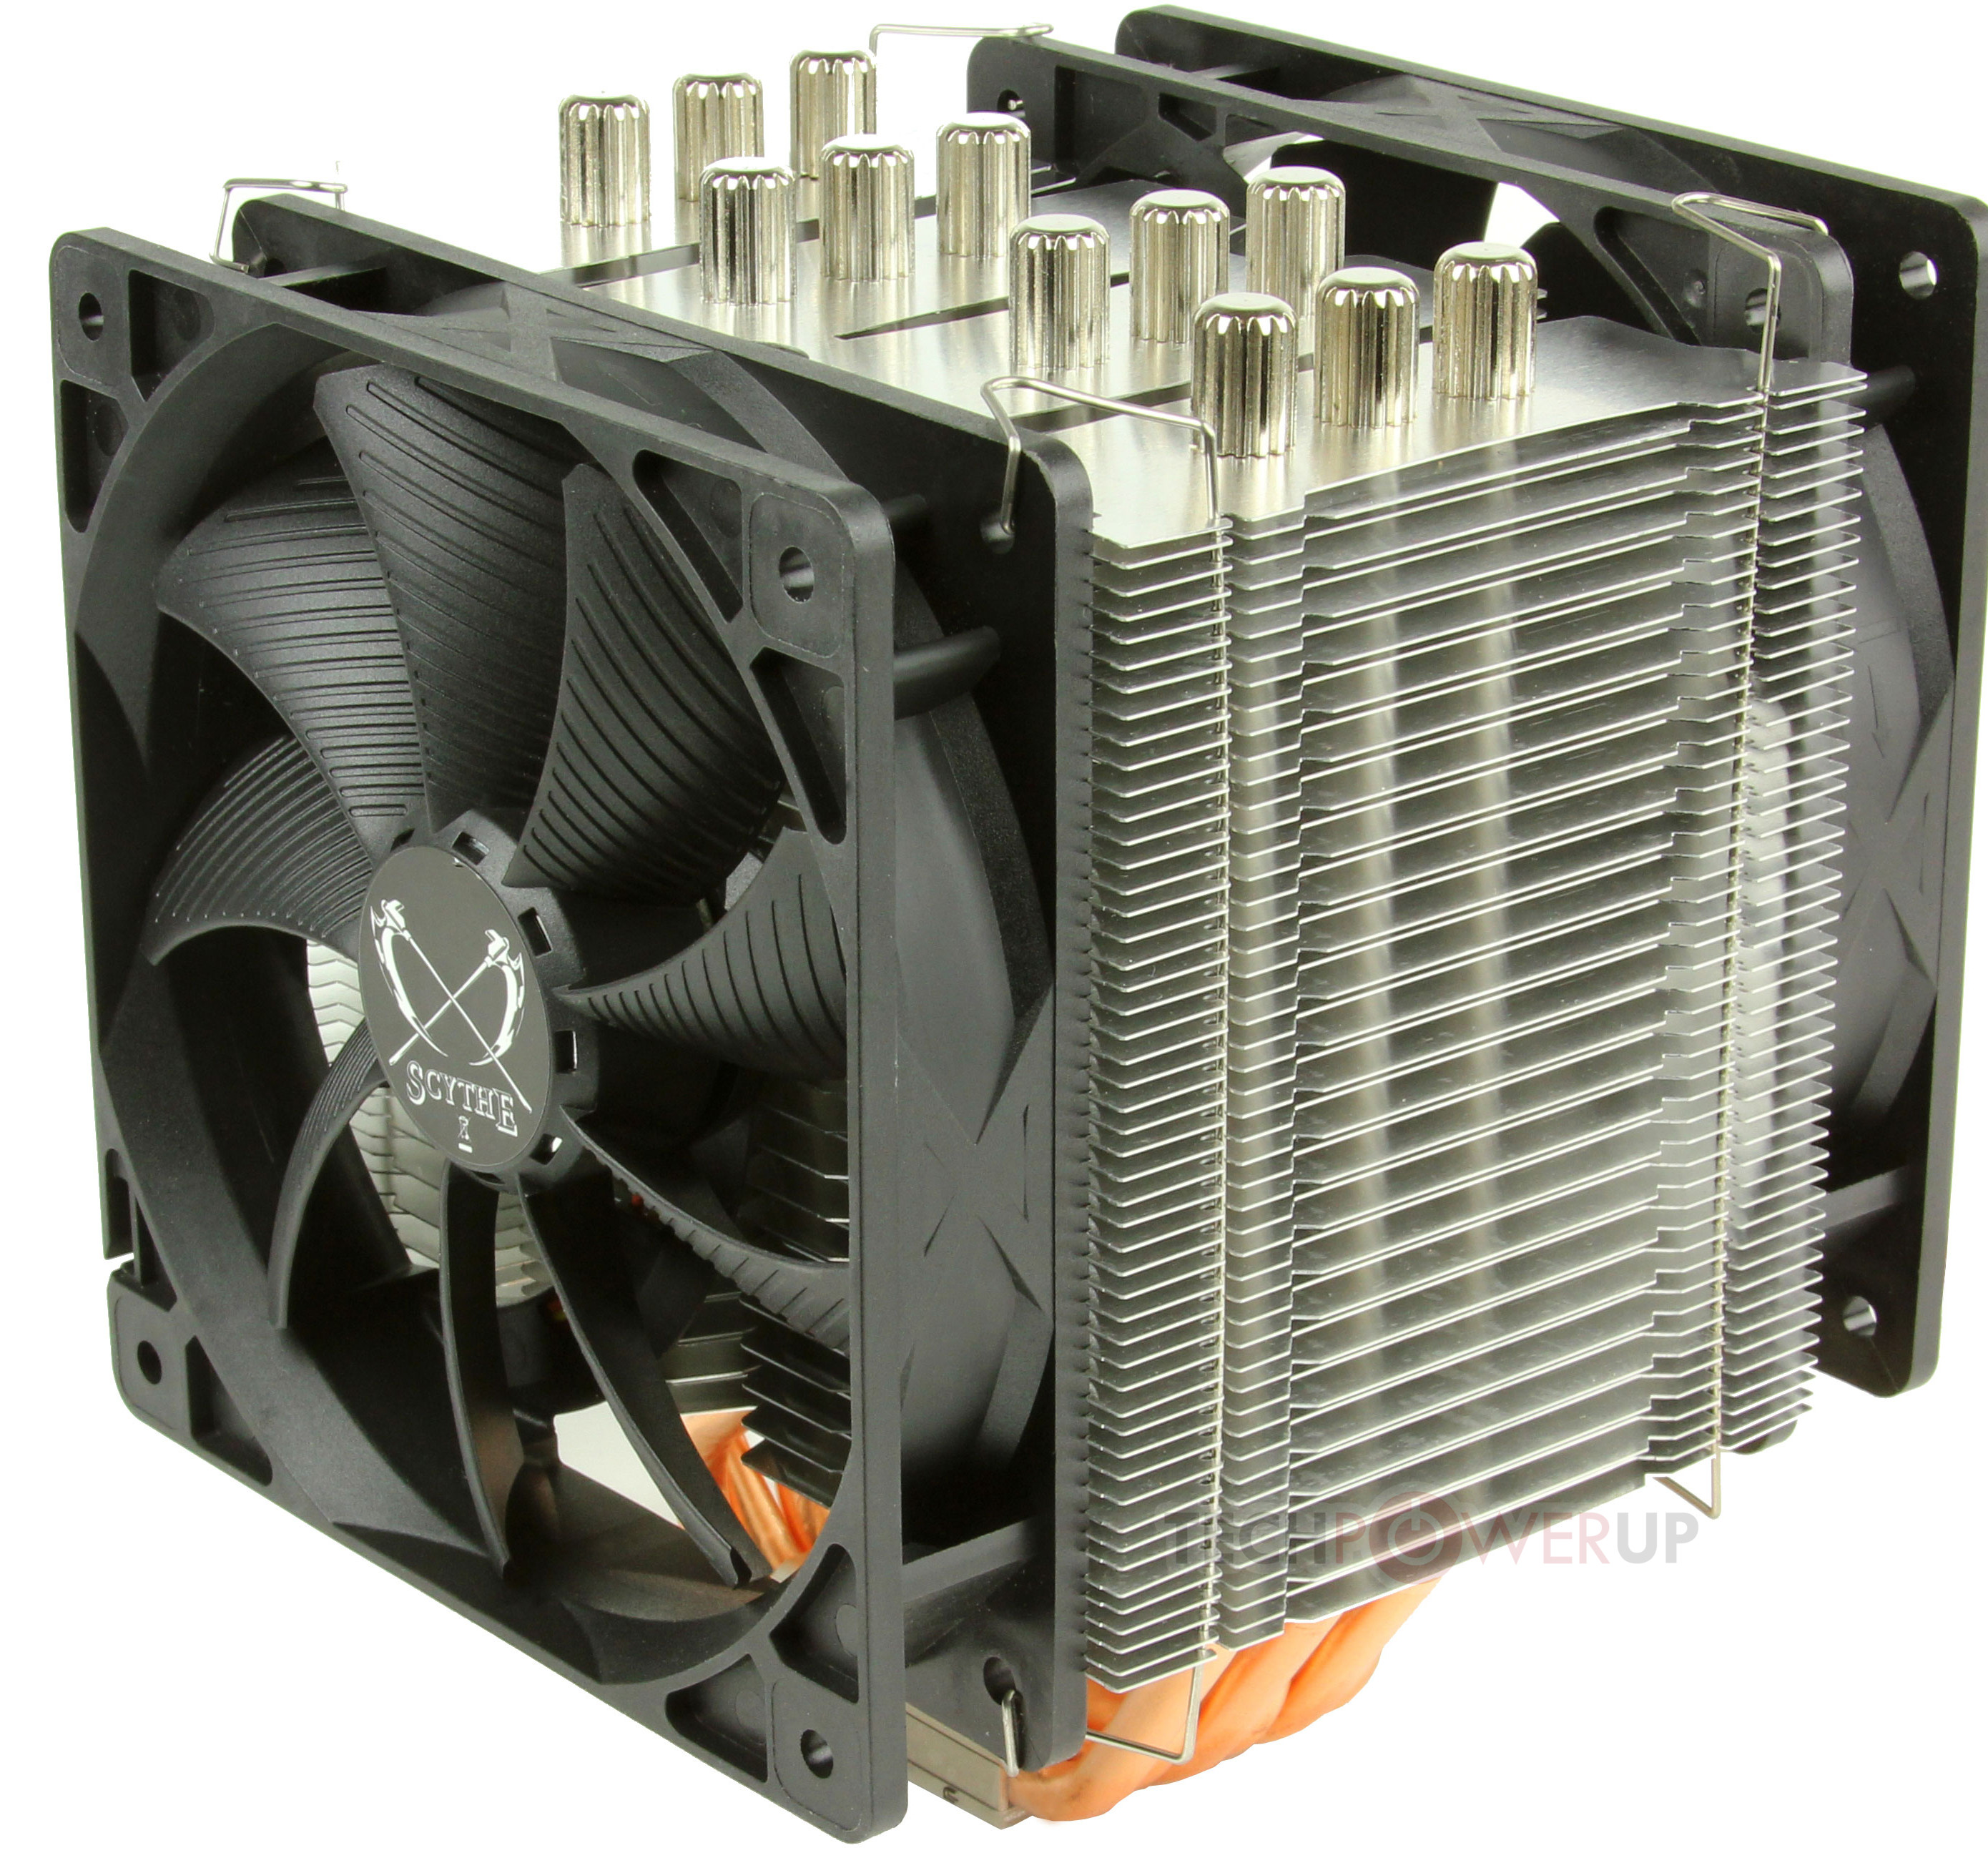 Scythe Mugen 4 CPU Cooler Generally Available | techPowerUp